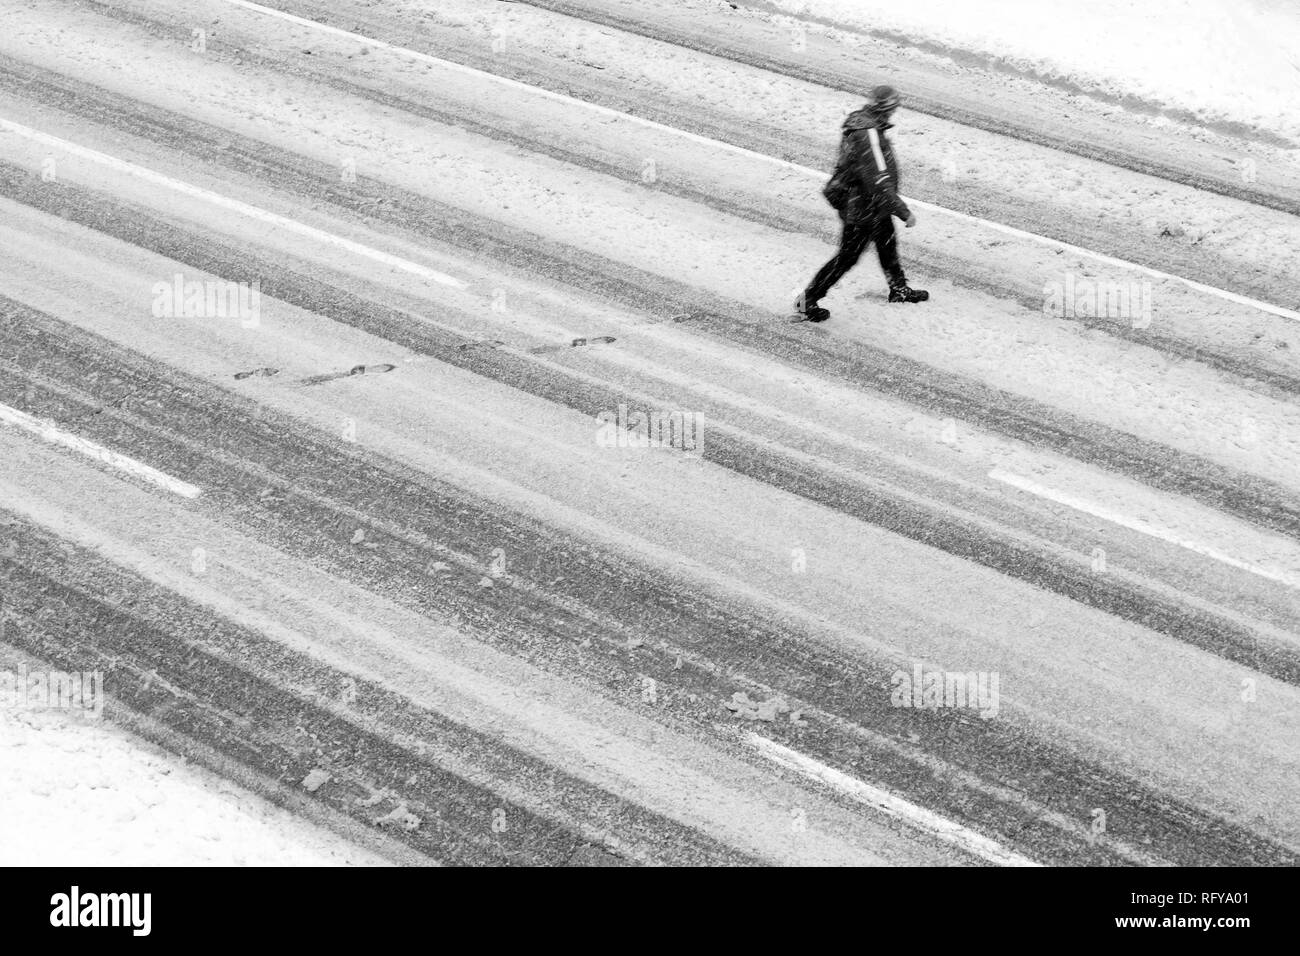 Un homme traversant la rue vide pendant la tempête, high angle view en noir et blanc Banque D'Images